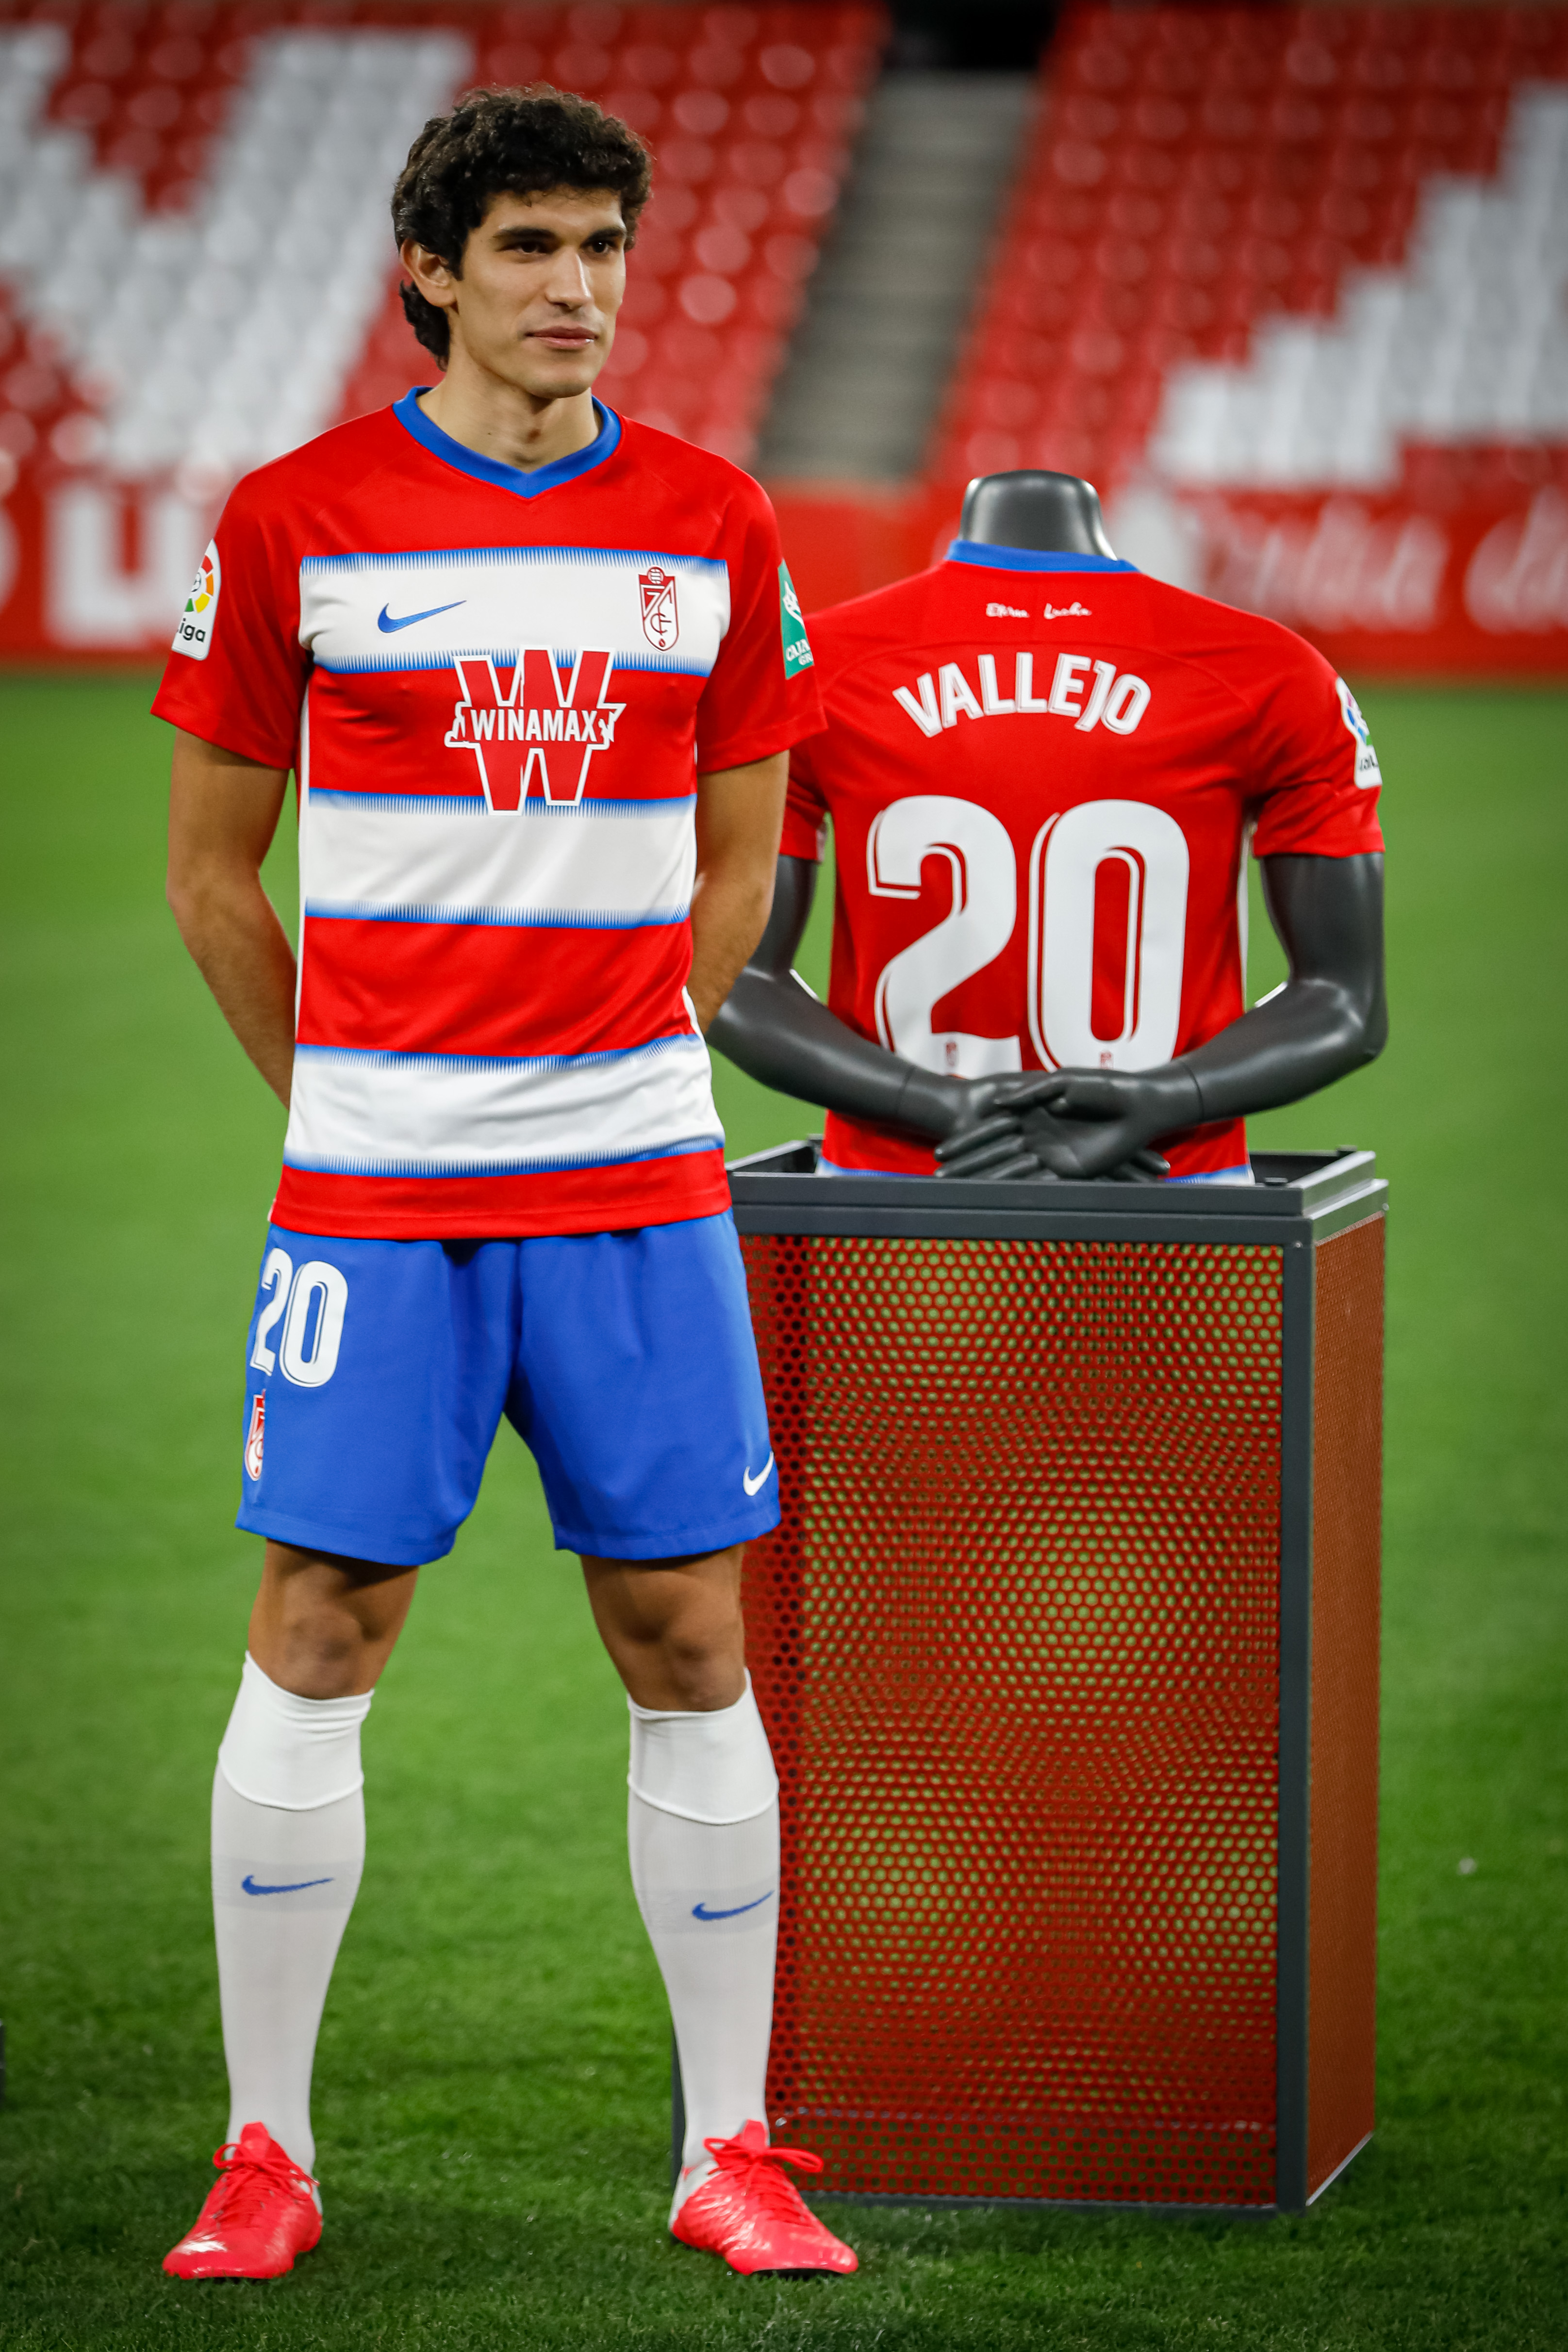 Jesus Vallejo, Granada CF’s New Player